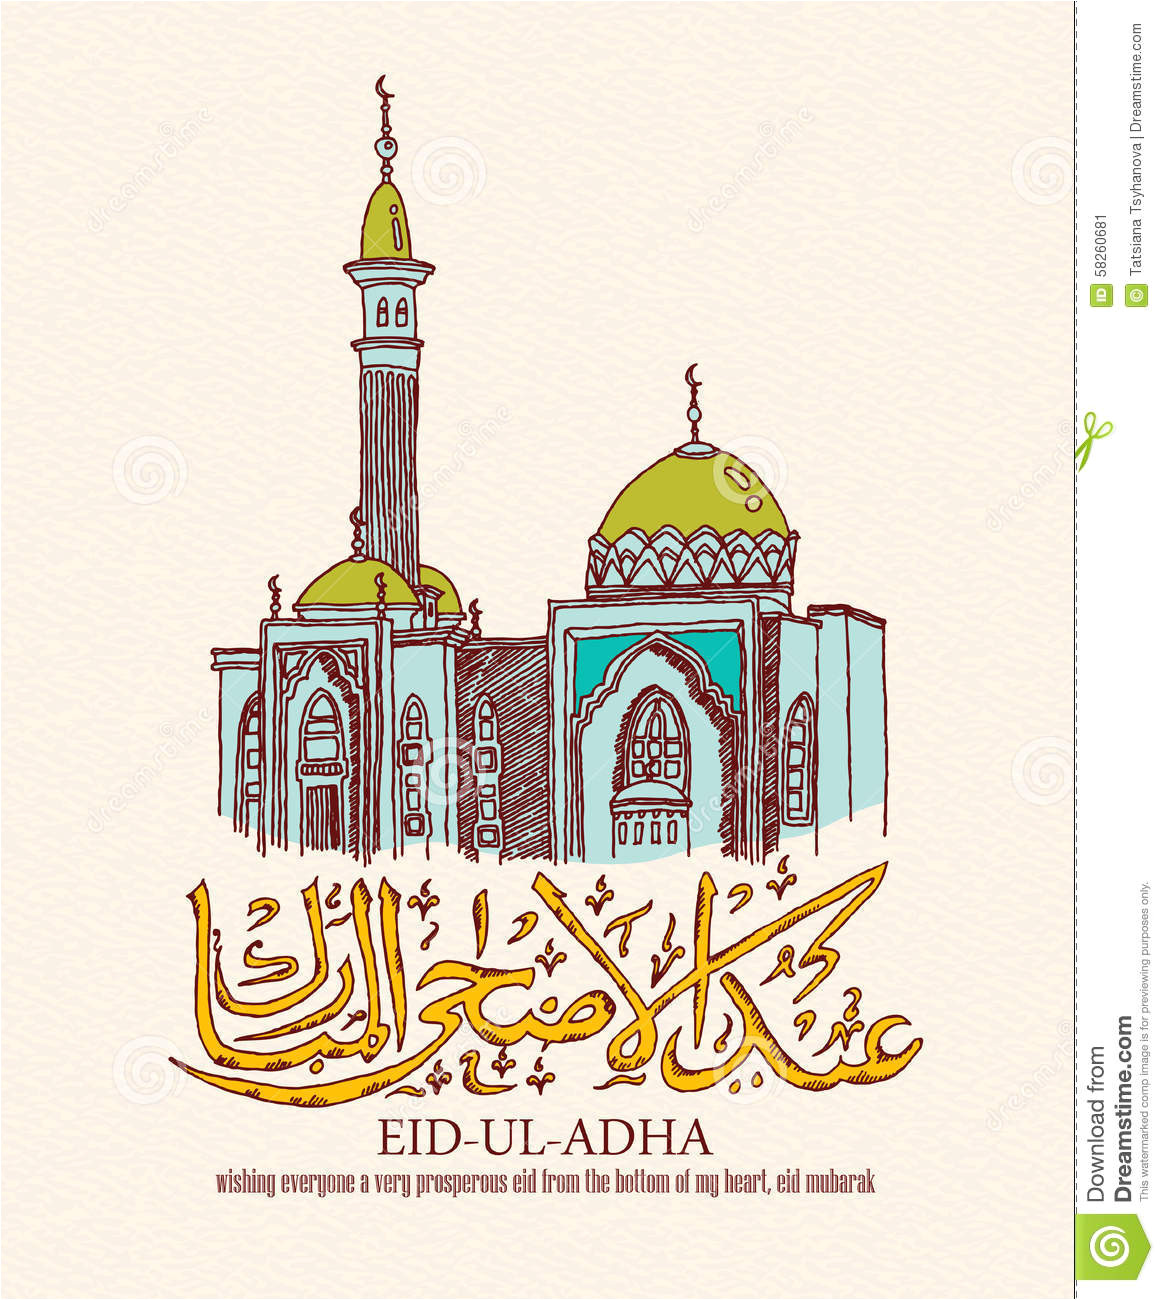 eid ul adha greeting card arabic islamic calligraphy text old mosque retro style muslim community festival 58260681 jpg